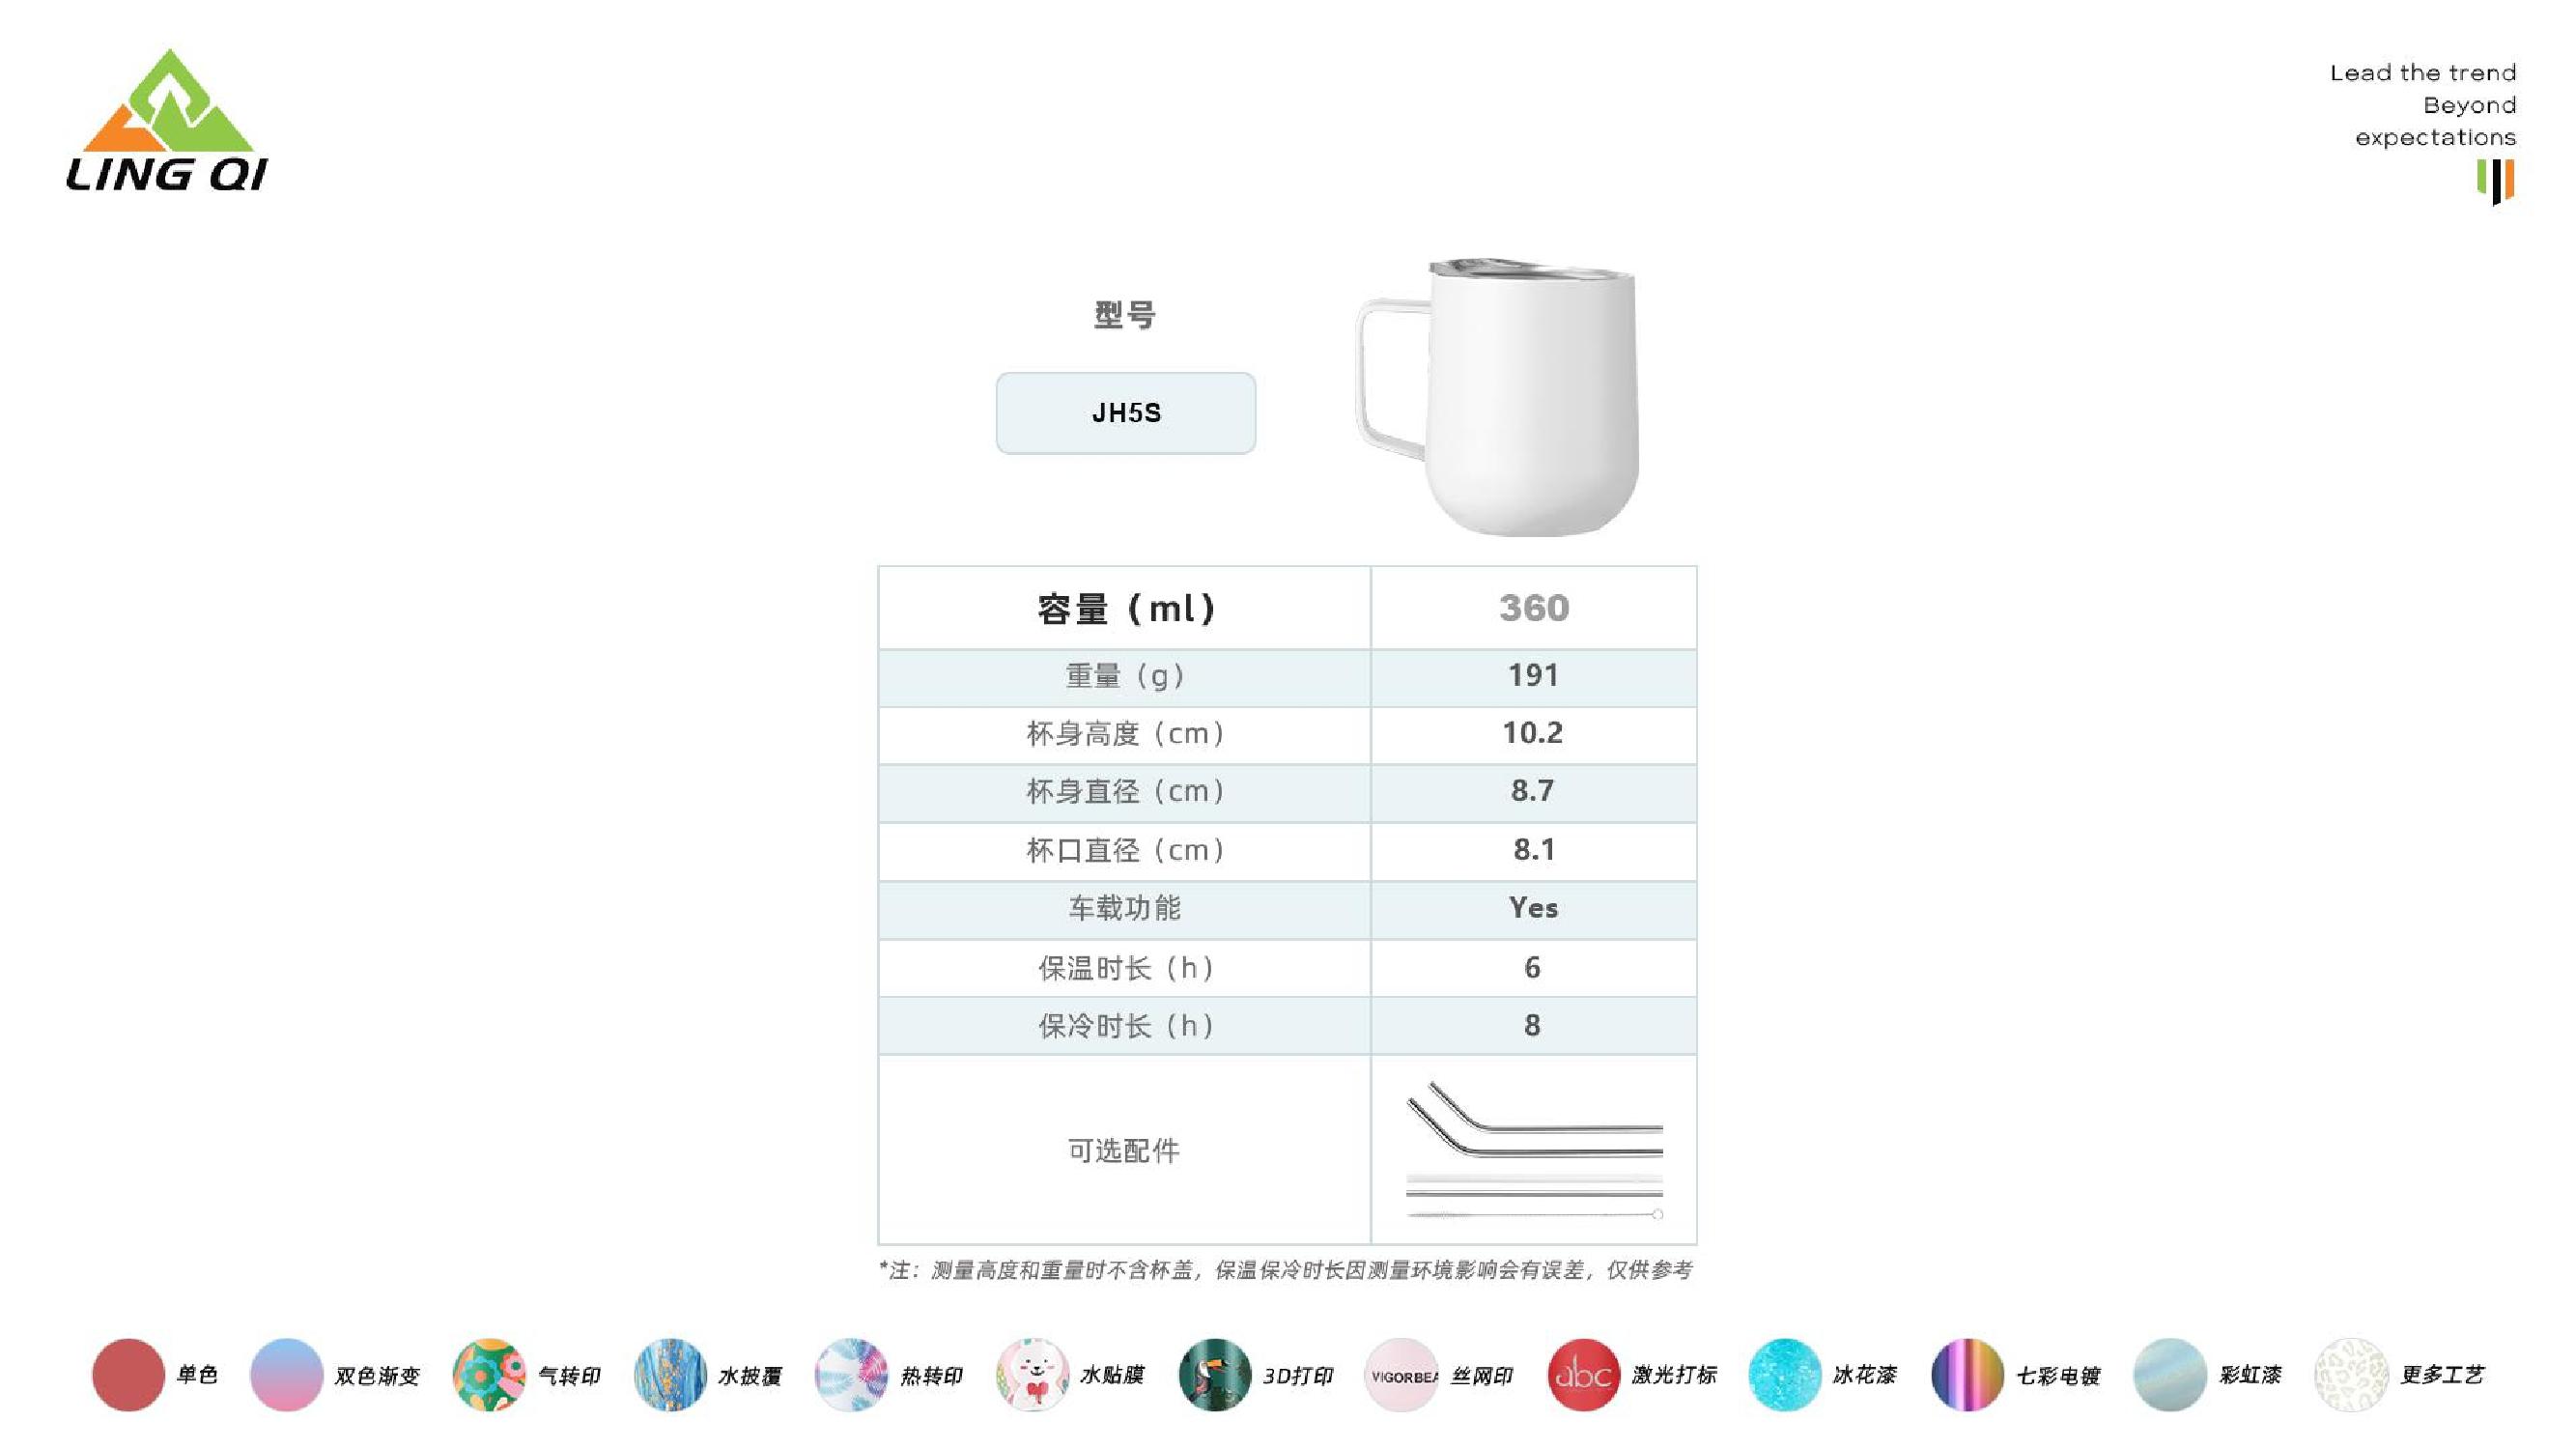 领奇产品图册（中文版）_11.jpg